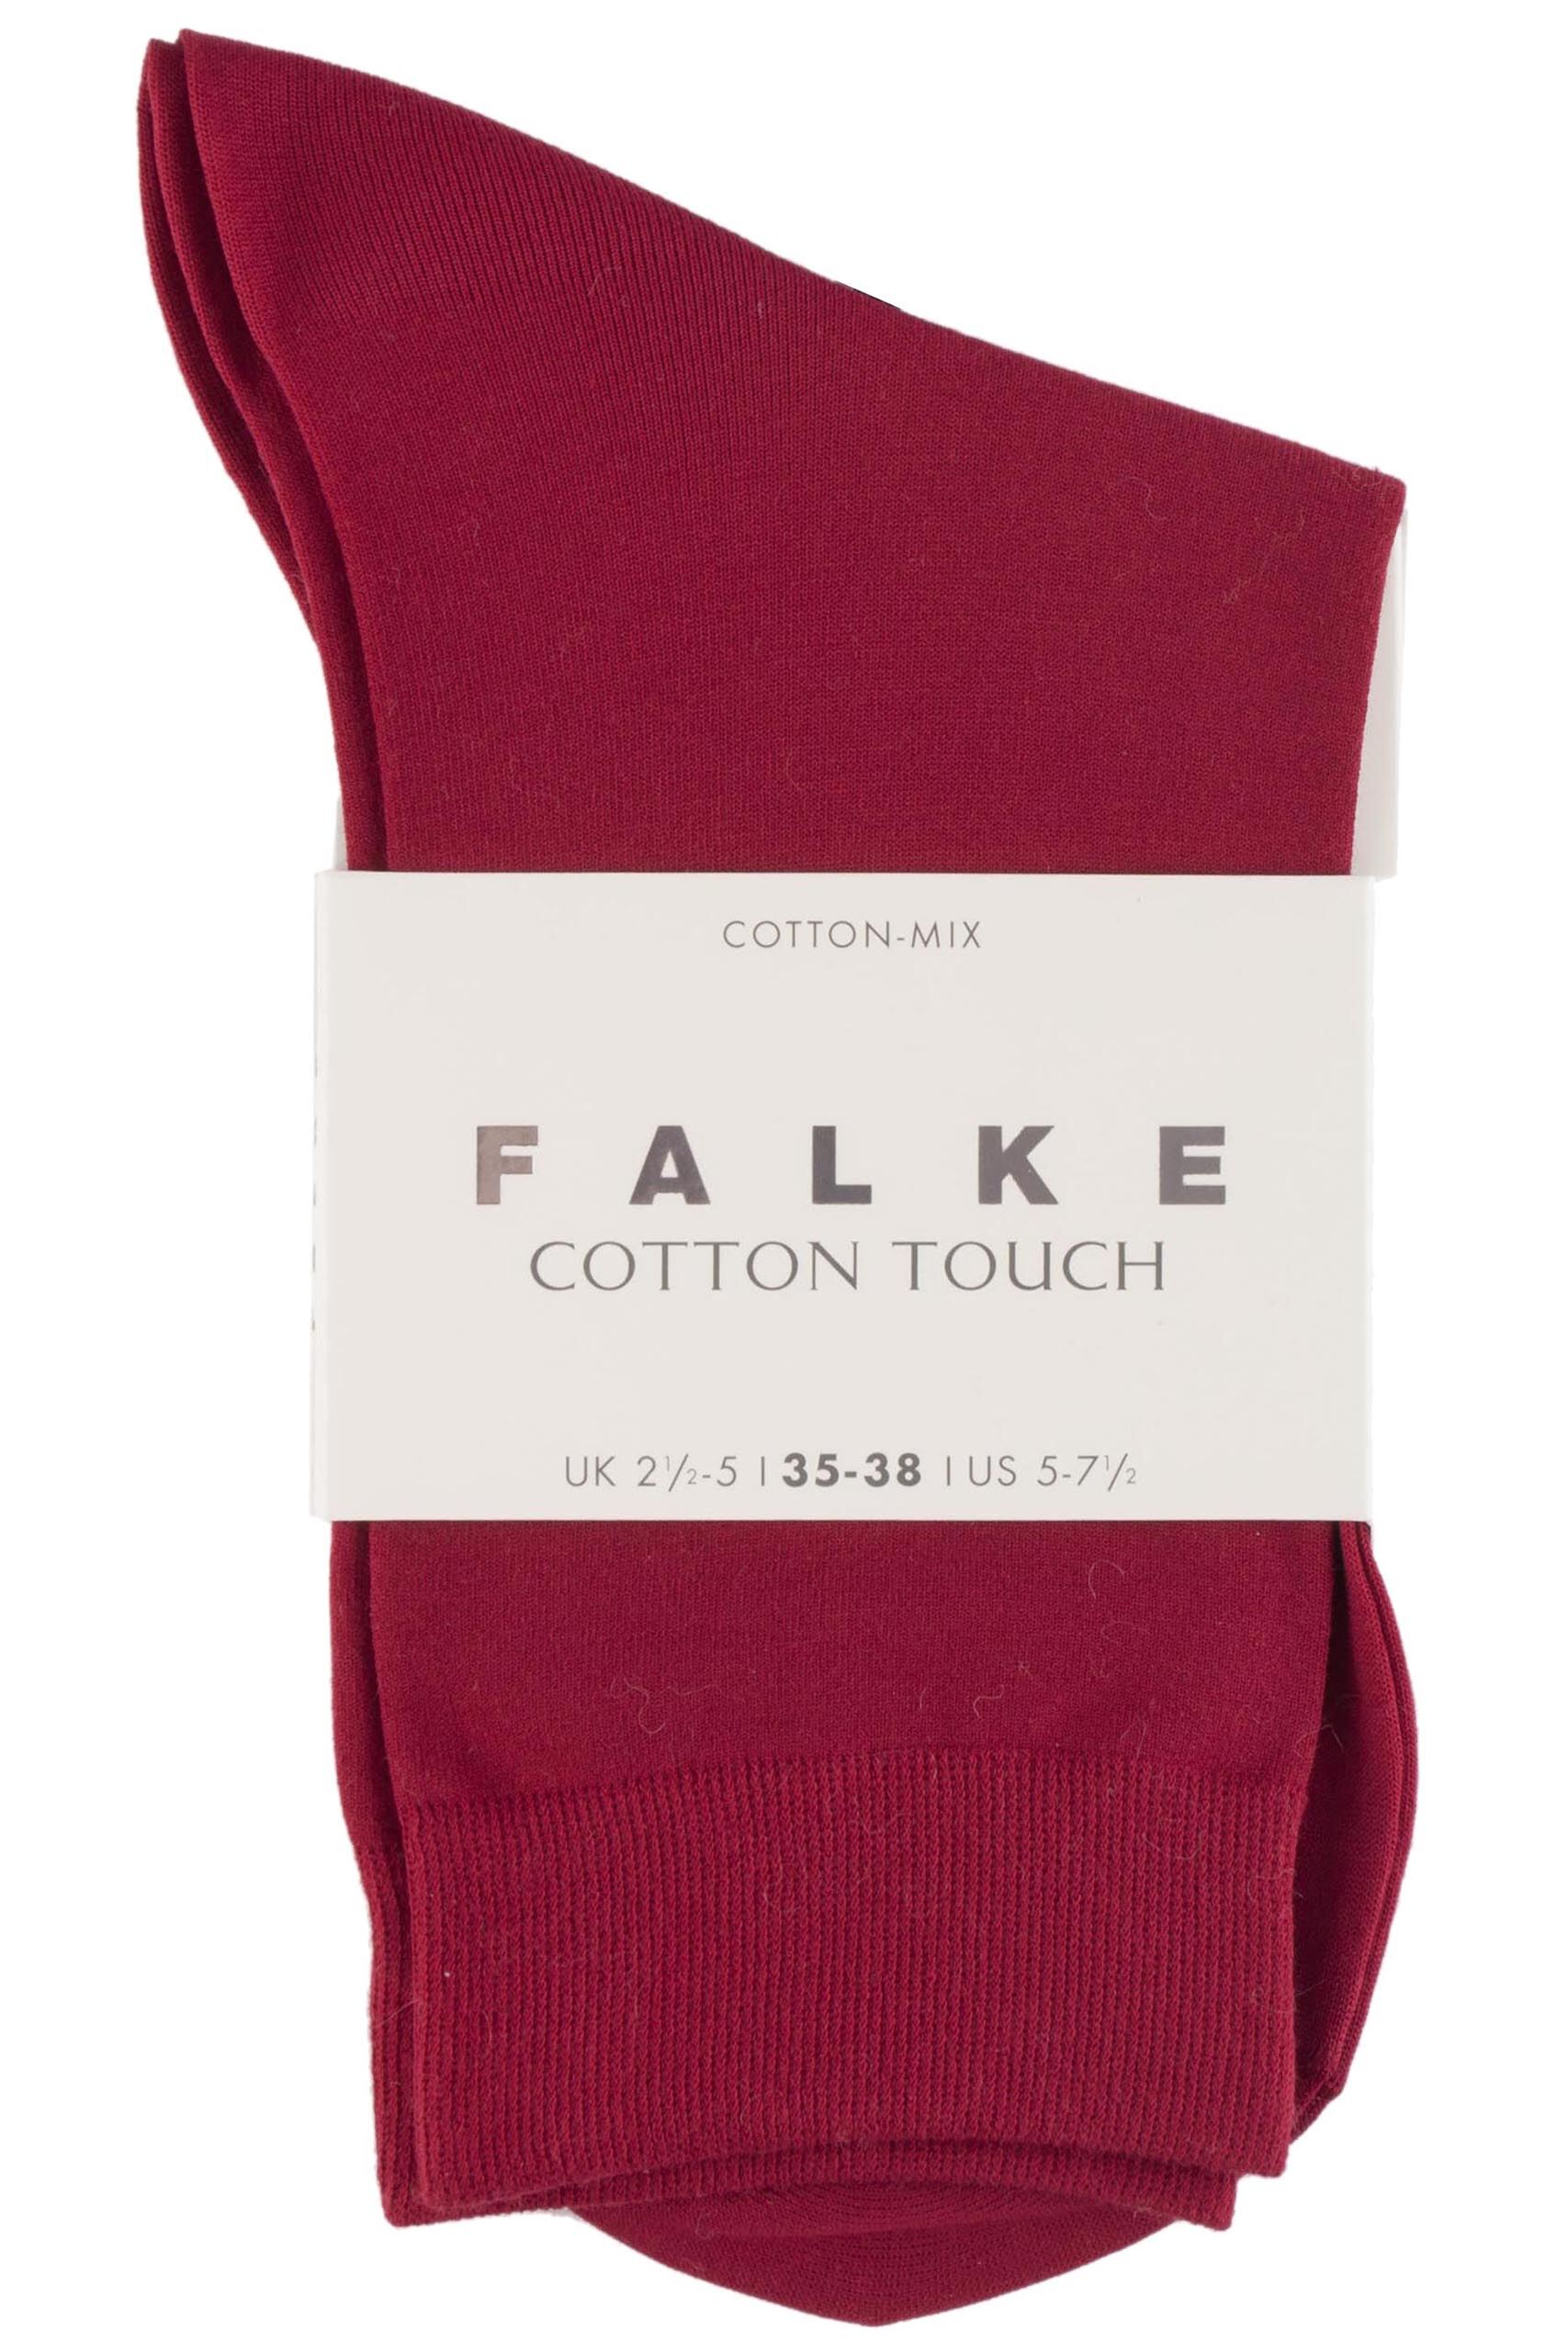  Falke Cotton Touch Anklet Socks